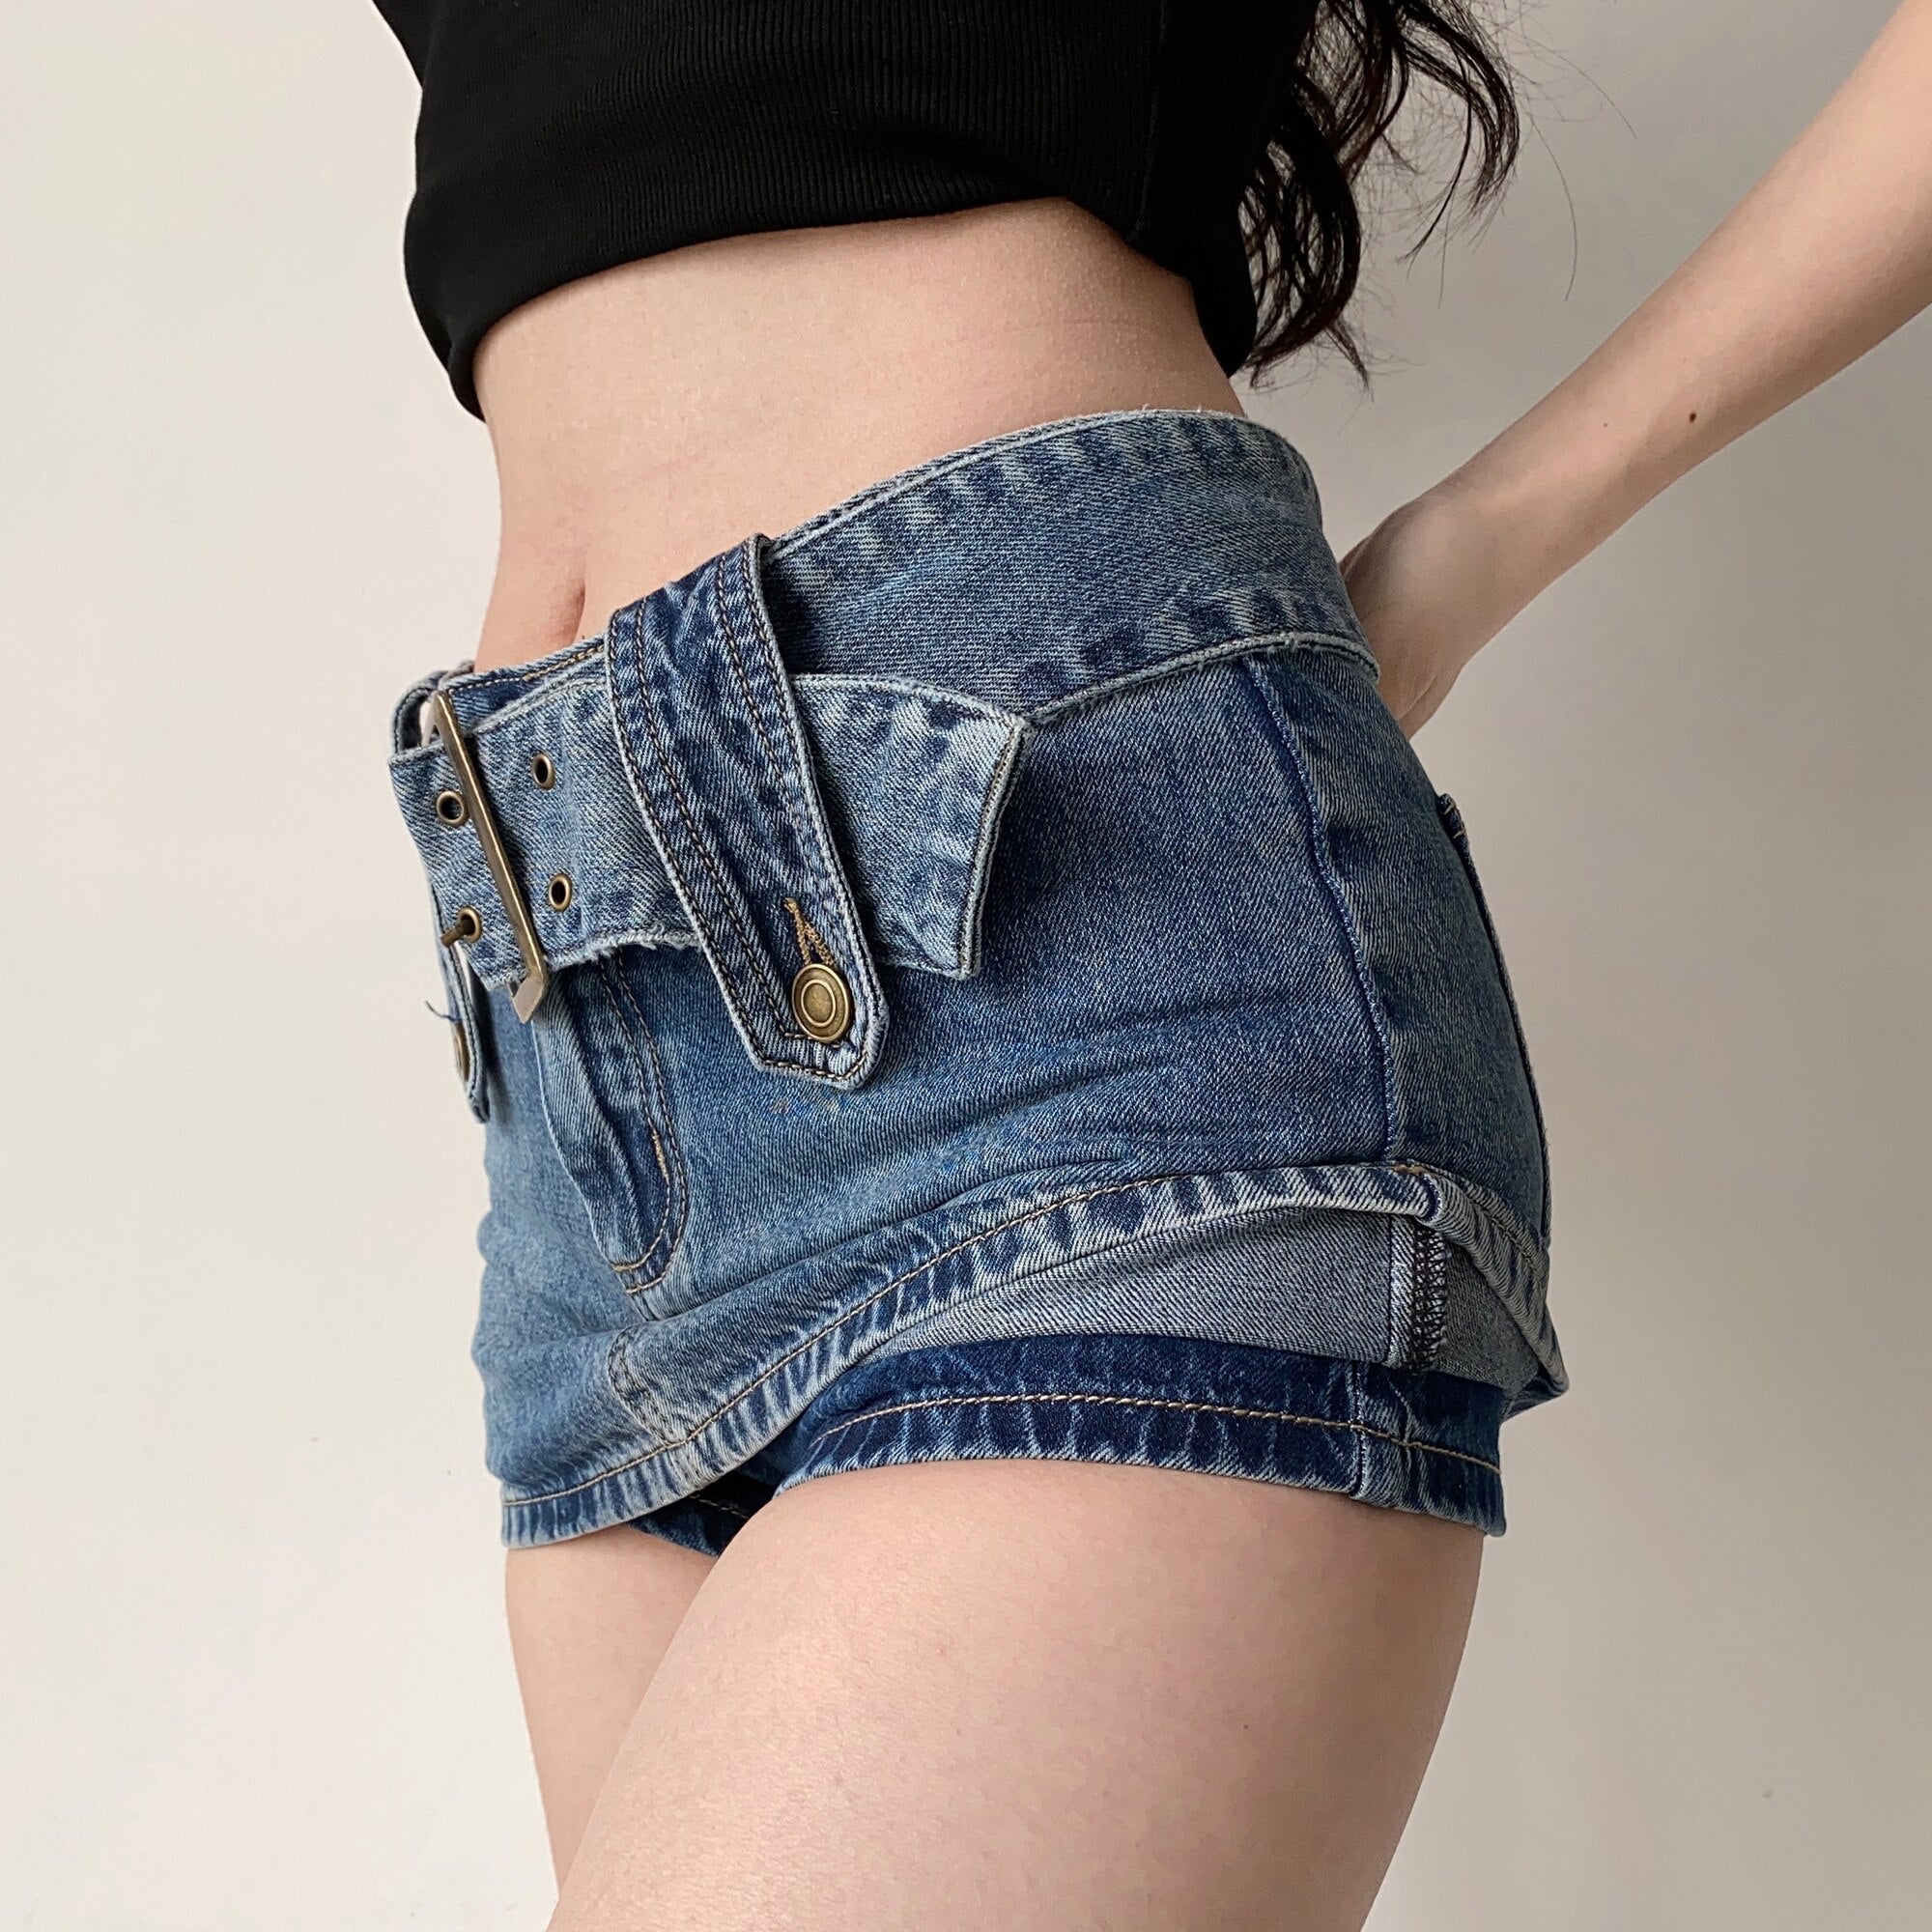 Geumxl Wide Belt Denim Miniskirt For Women Korean Hot Sexy Women Short Skirts Pocket High Waist Boho Safari Style